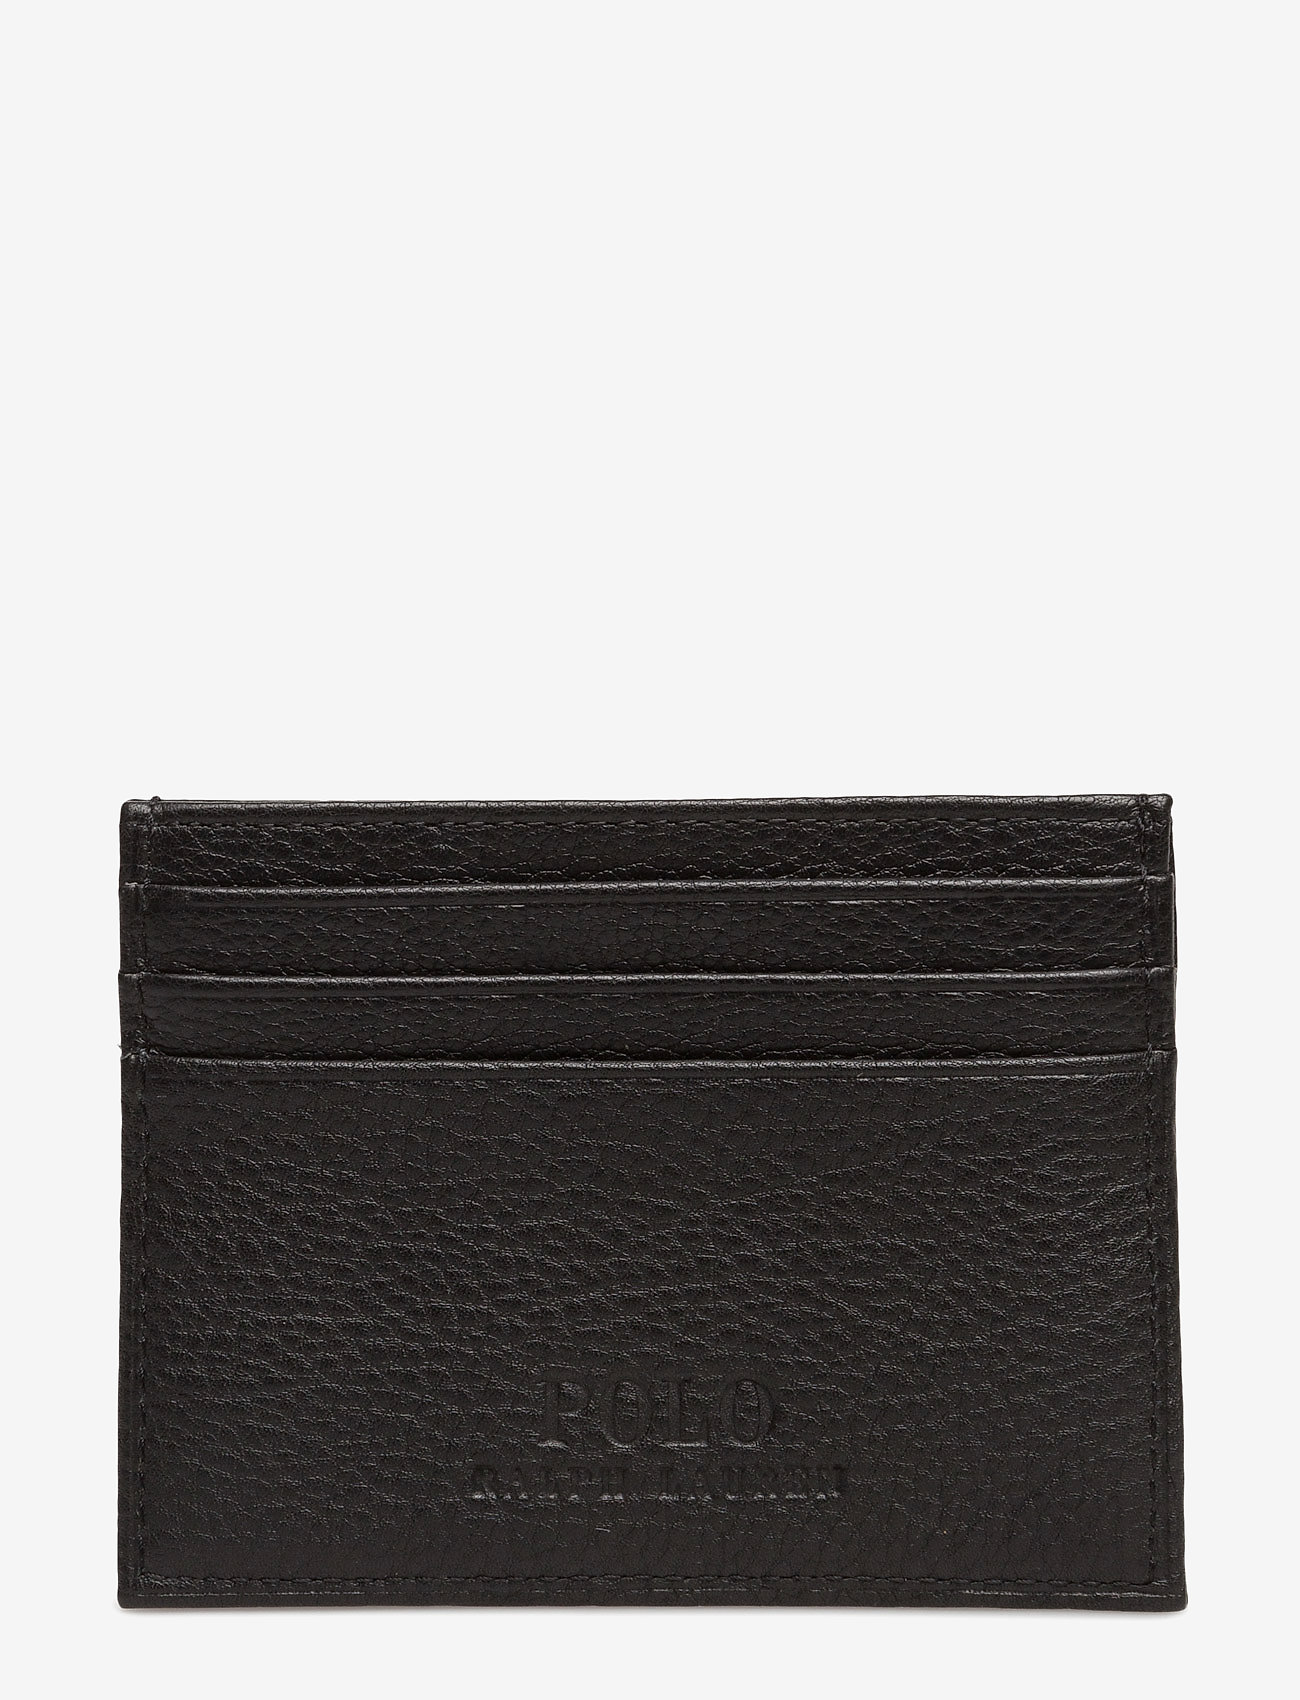 Polo Ralph Lauren - Pebble Leather Card Case - black - 1